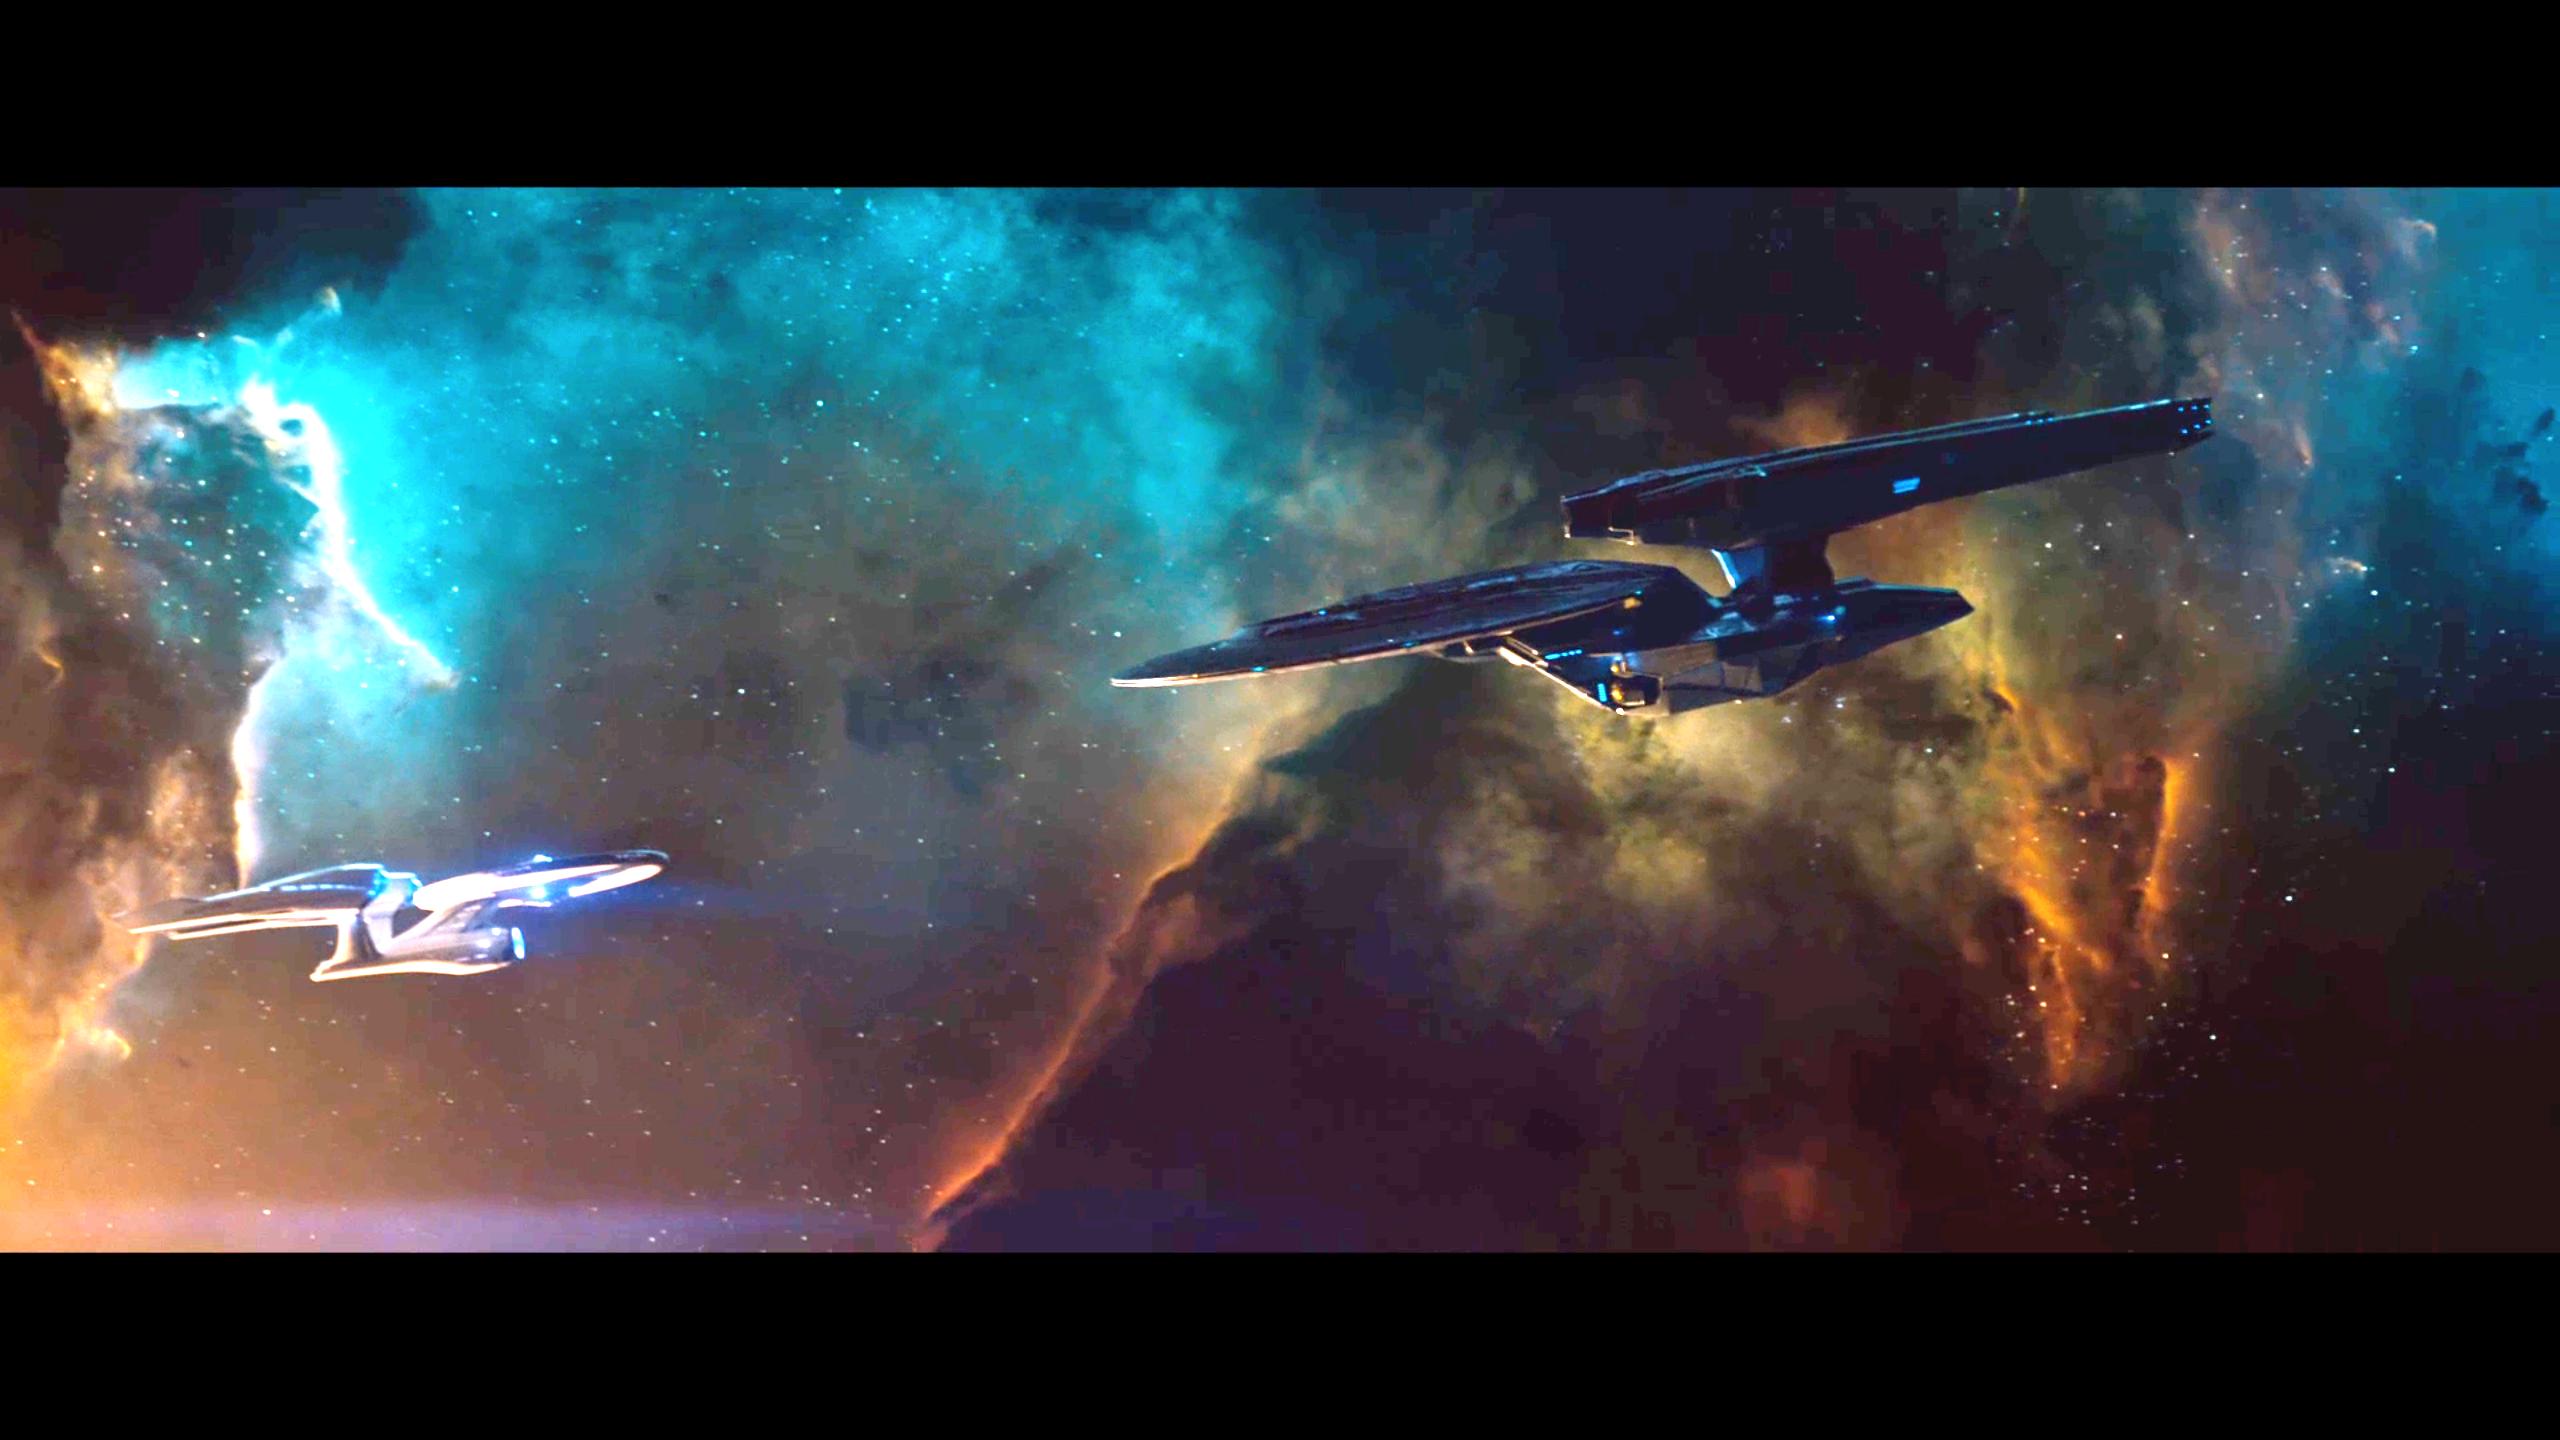 Descargar fondos de escritorio de Star Trek: En La Oscuridad HD